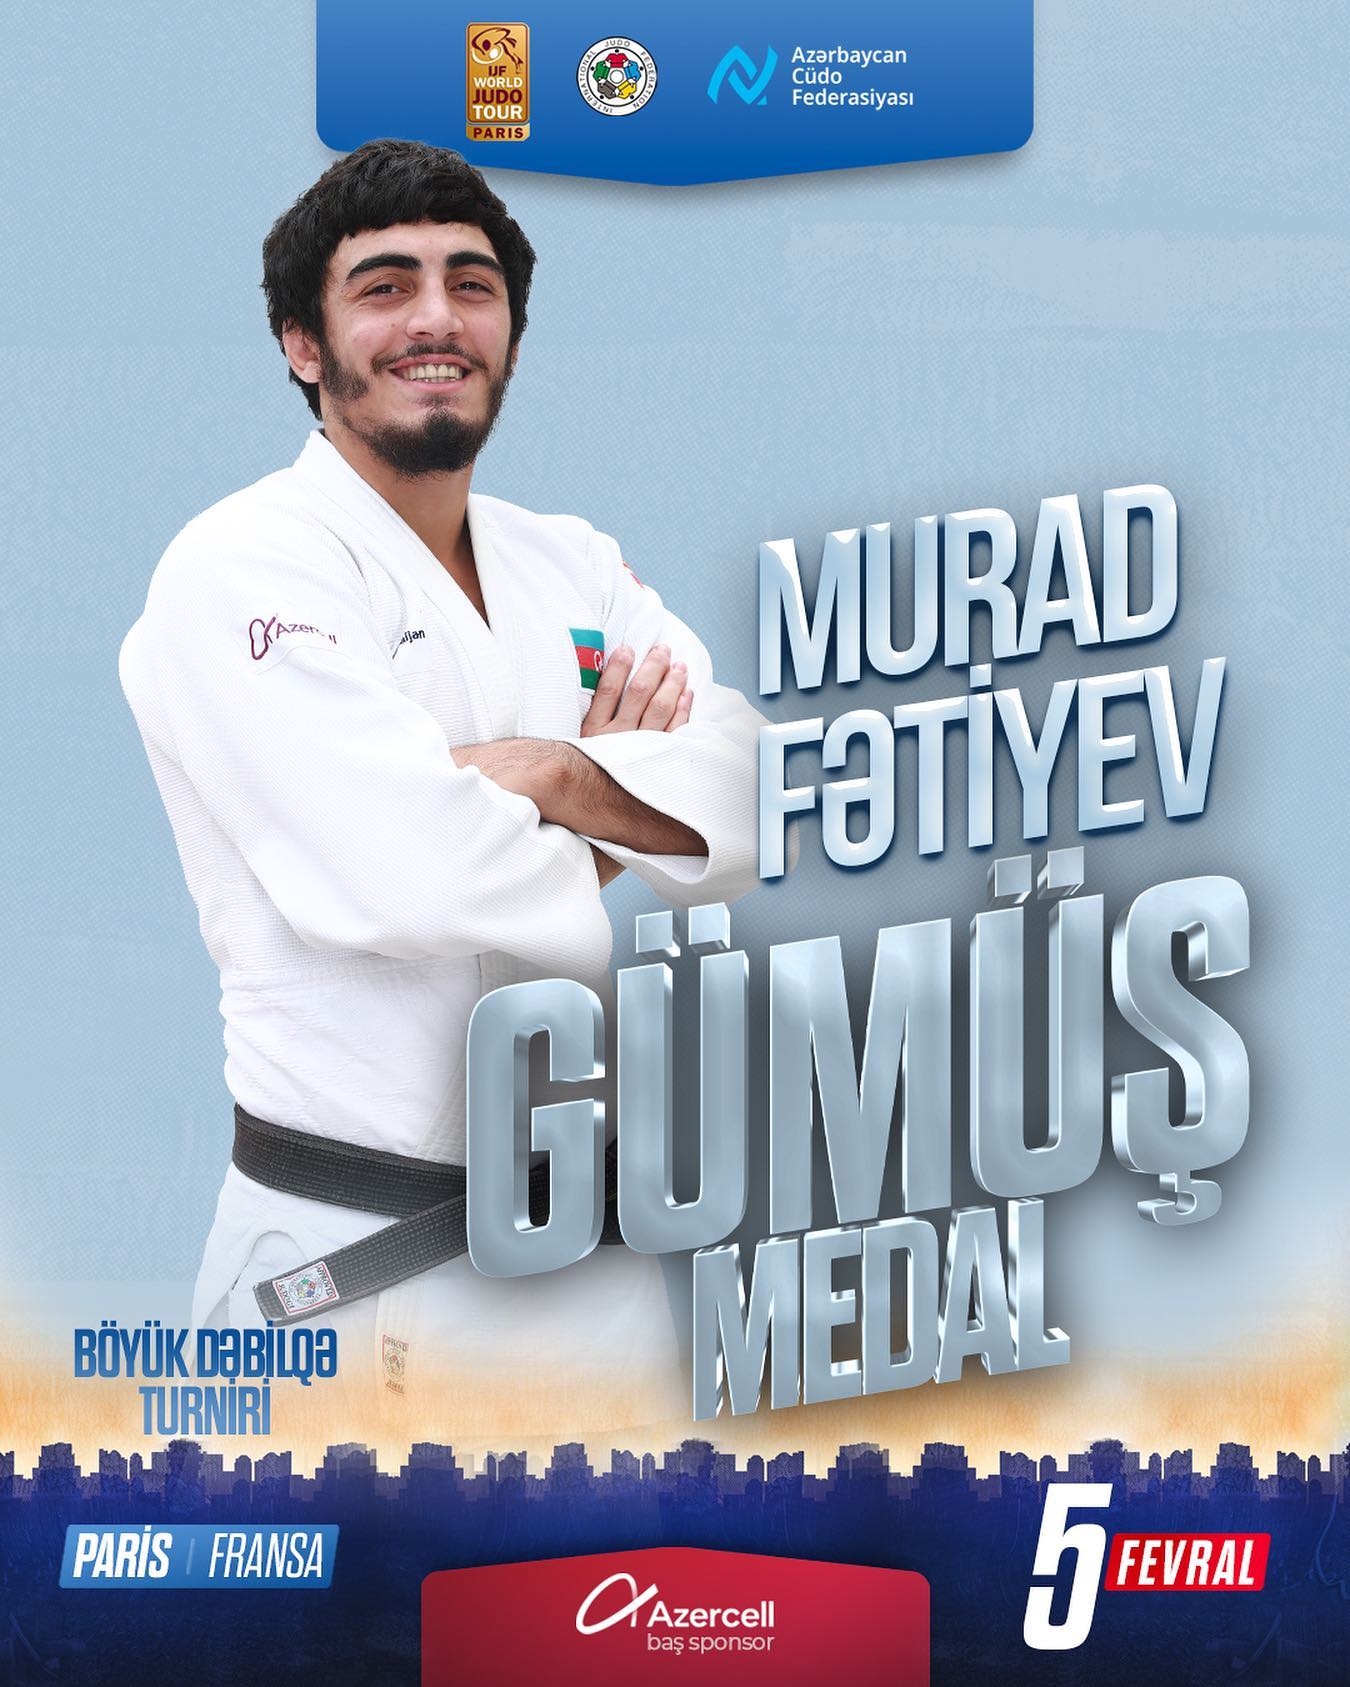 img/posts/judo-club-2012-uzvleri-boyuk-debilqe-turnirinde-2-medal-qazandilar-2023-02-06-142514/0.jpg